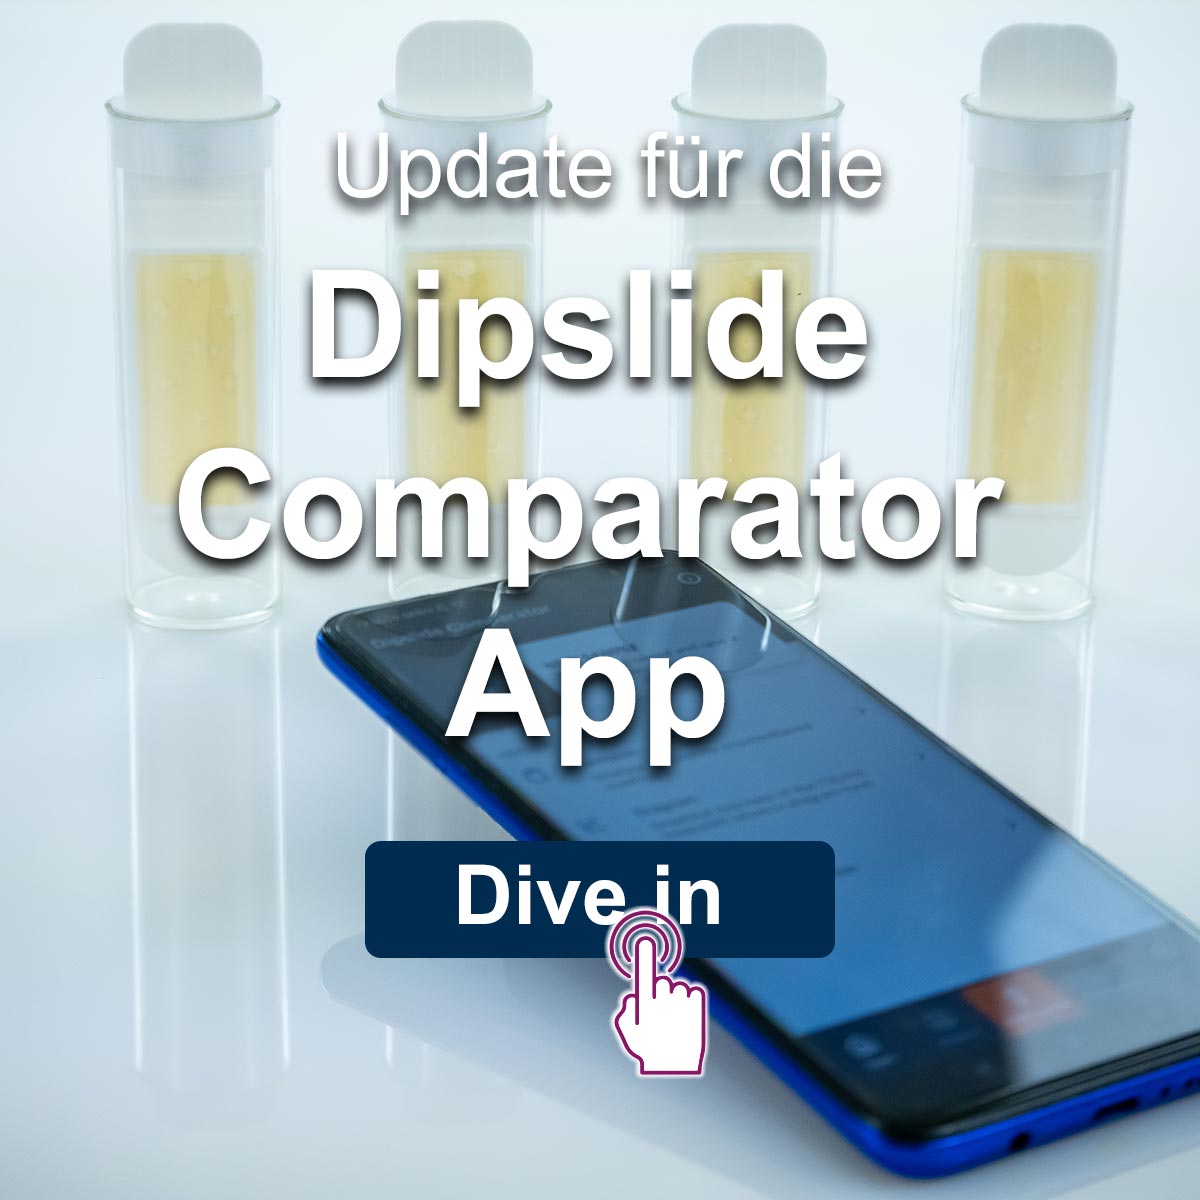 Update für die Dipslide Comparator App